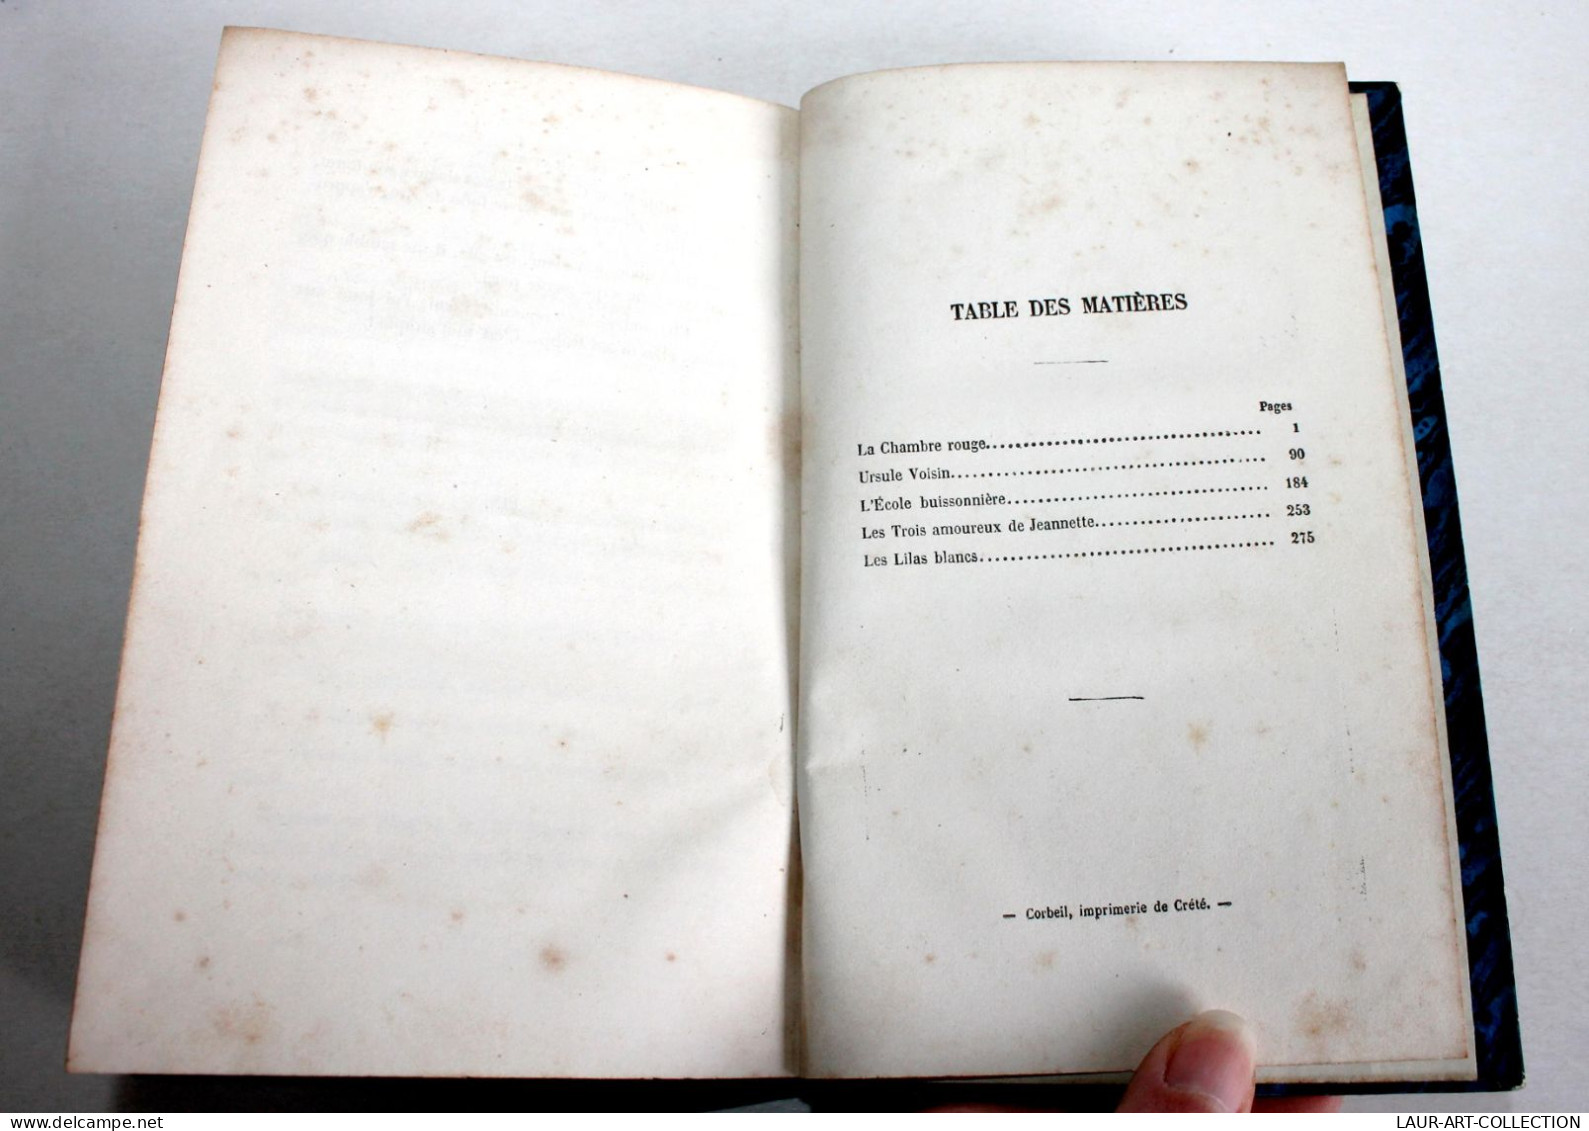 PARISIENNES ET PROVINCIALES Par AMEDEE ACHARD 1856 MICHEL LEVY EDITEURS, LITTERATURE/ ANCIEN LIVRE XIXe SIECLE (1803.49) - 1801-1900